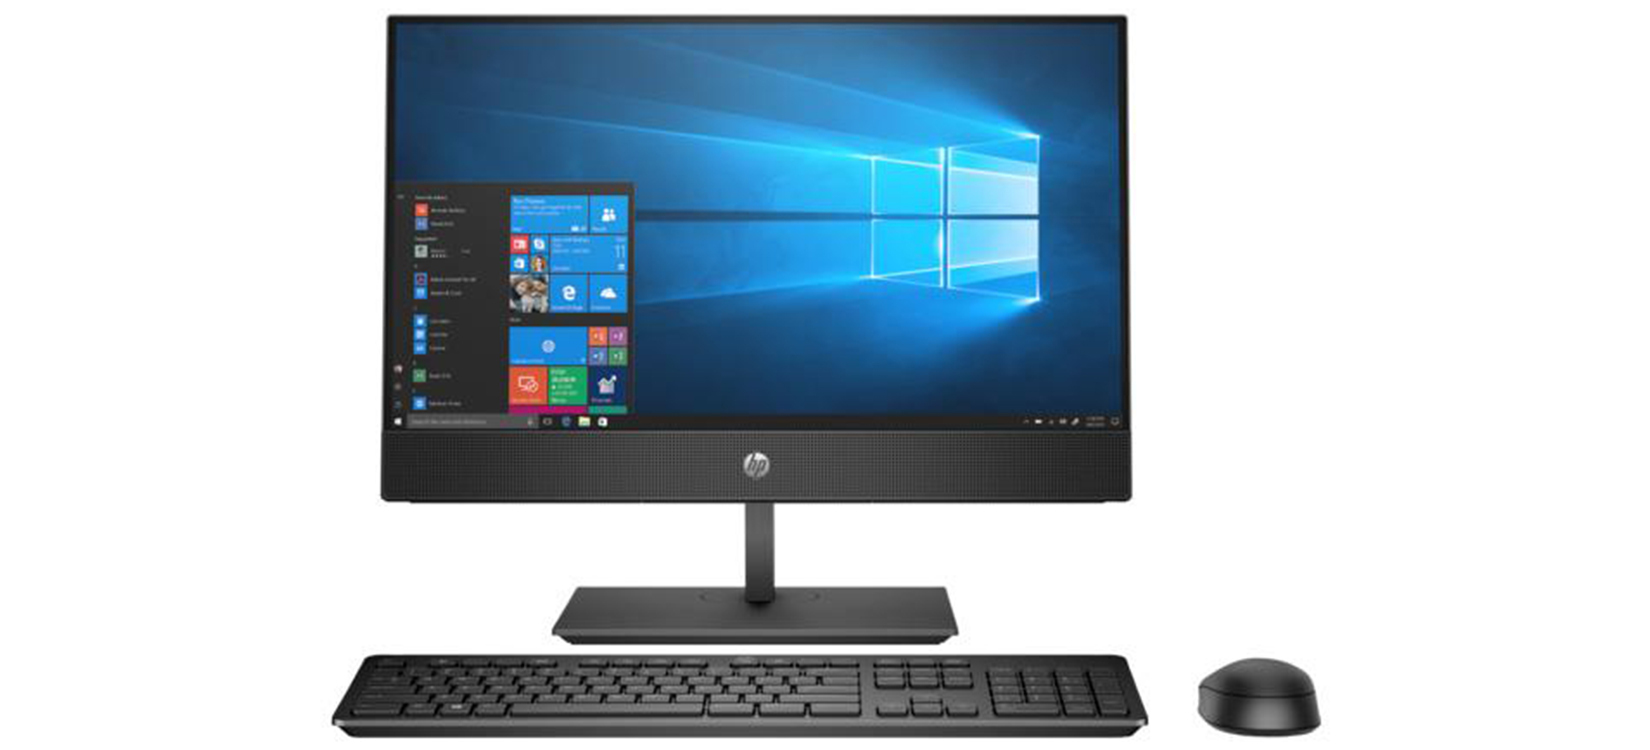 Máy tính để bàn HP All in One ProOne 600 G6 235X2PA - Intel Core i5-10500T, 8GB RAM, SSD 256GB, Intel UHD Graphics 630, 21.5 inch